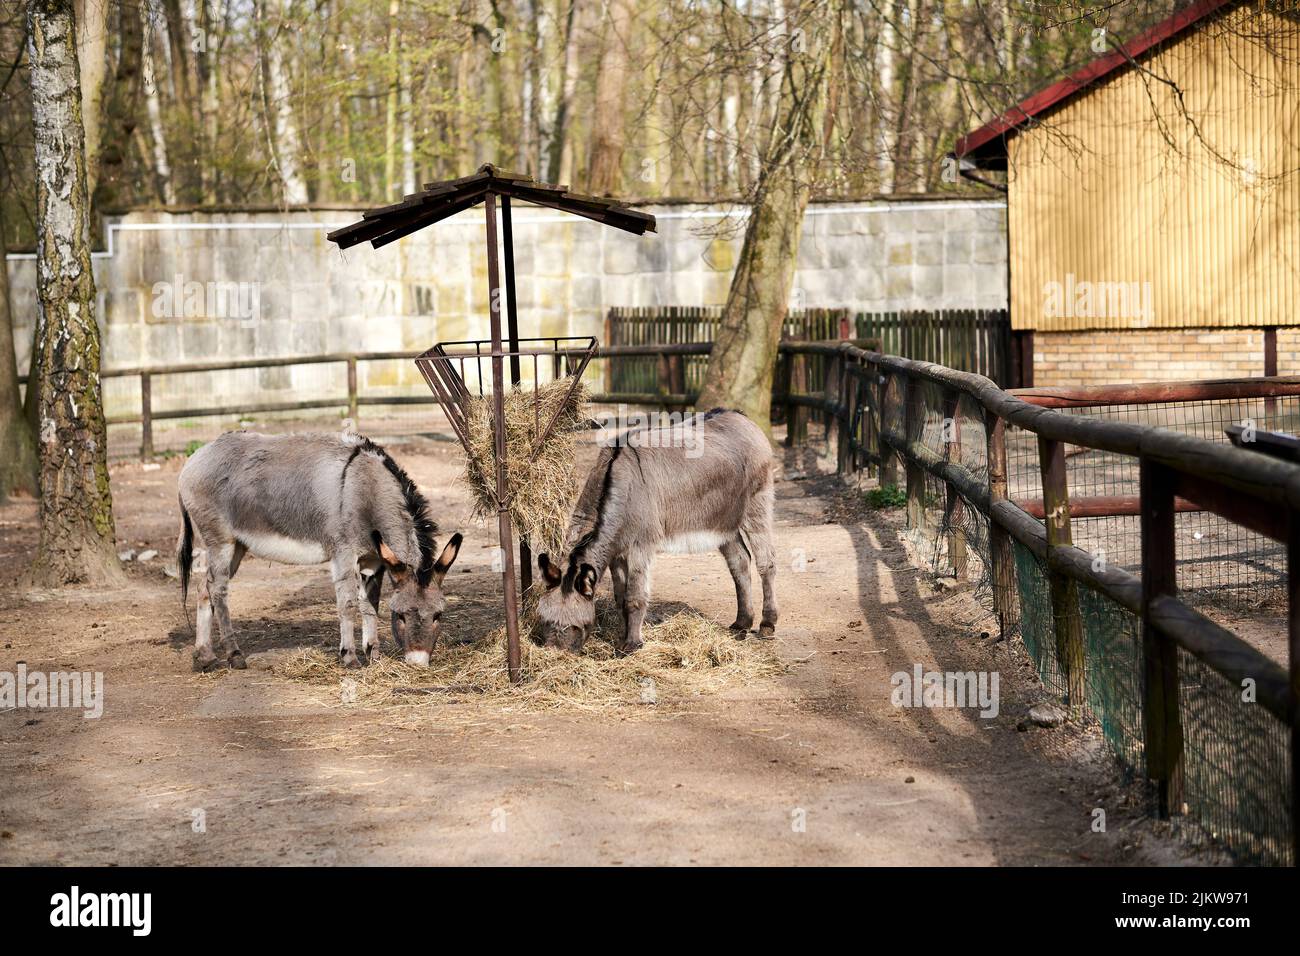 Deux ânes mangeant à l'intérieur de clôtures en bois dans le nouveau zoo Banque D'Images